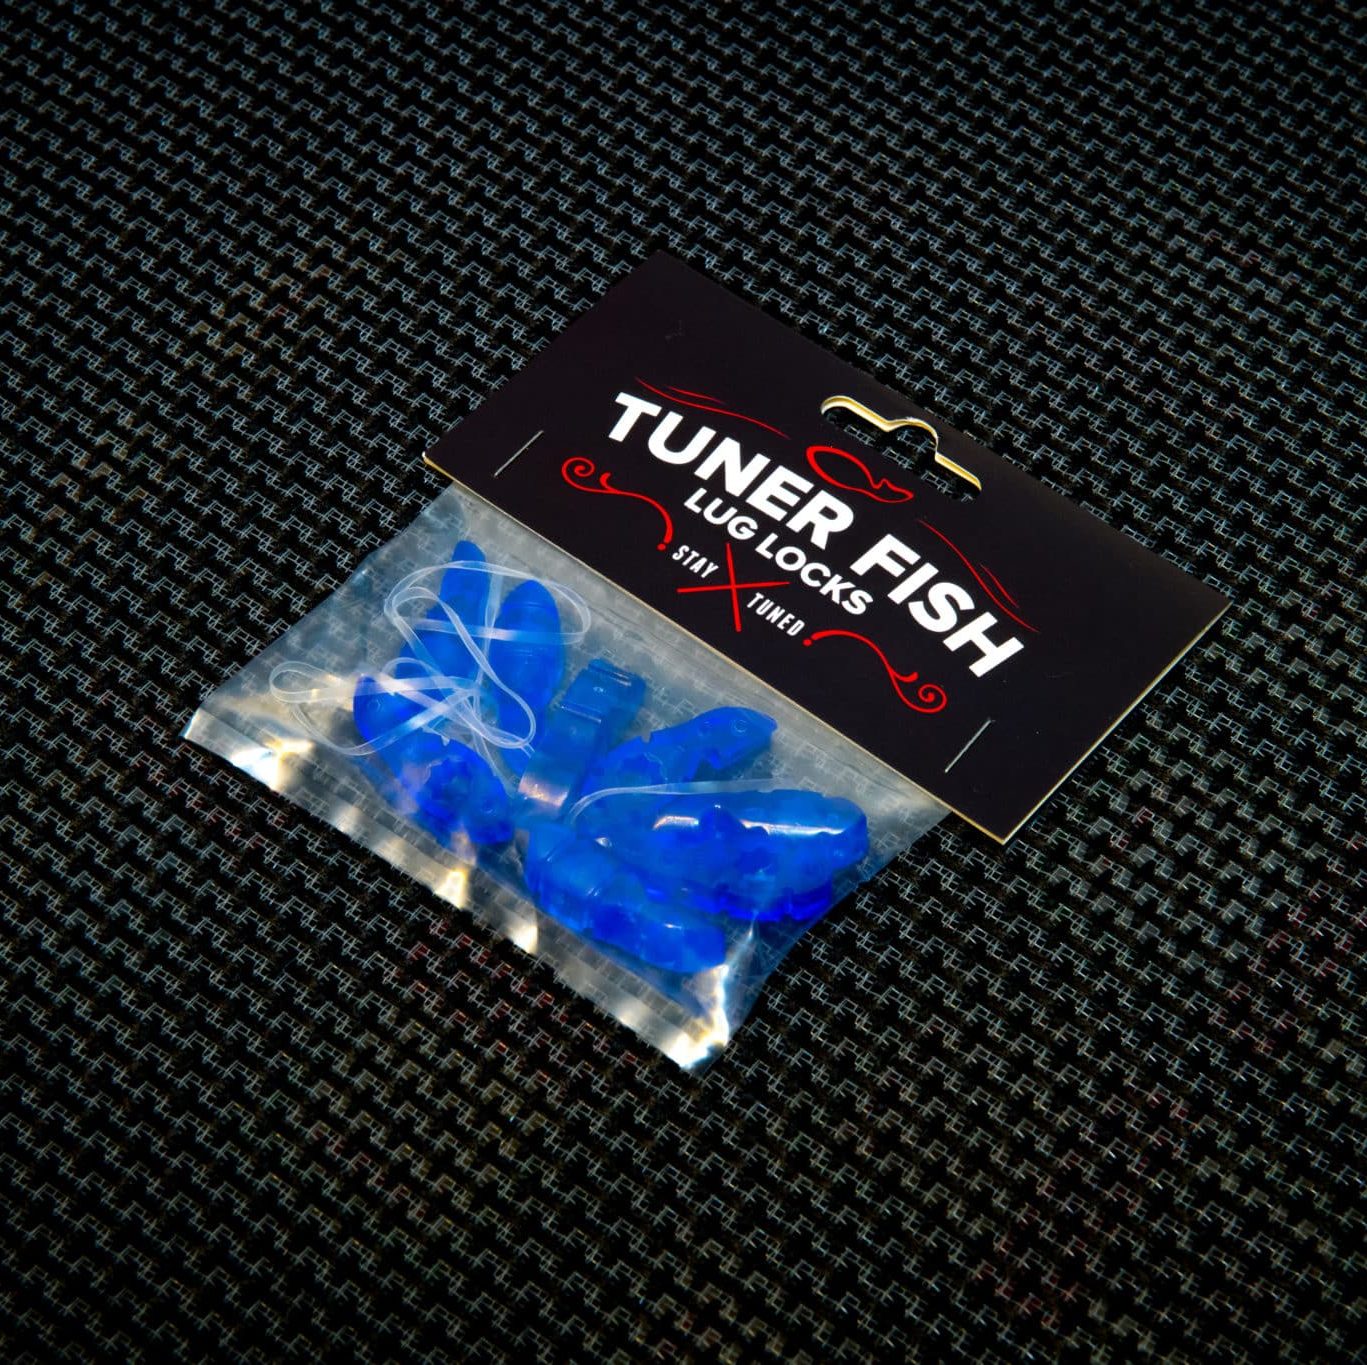 Tuner Fish Lug Locks Blue 8 Pack 6